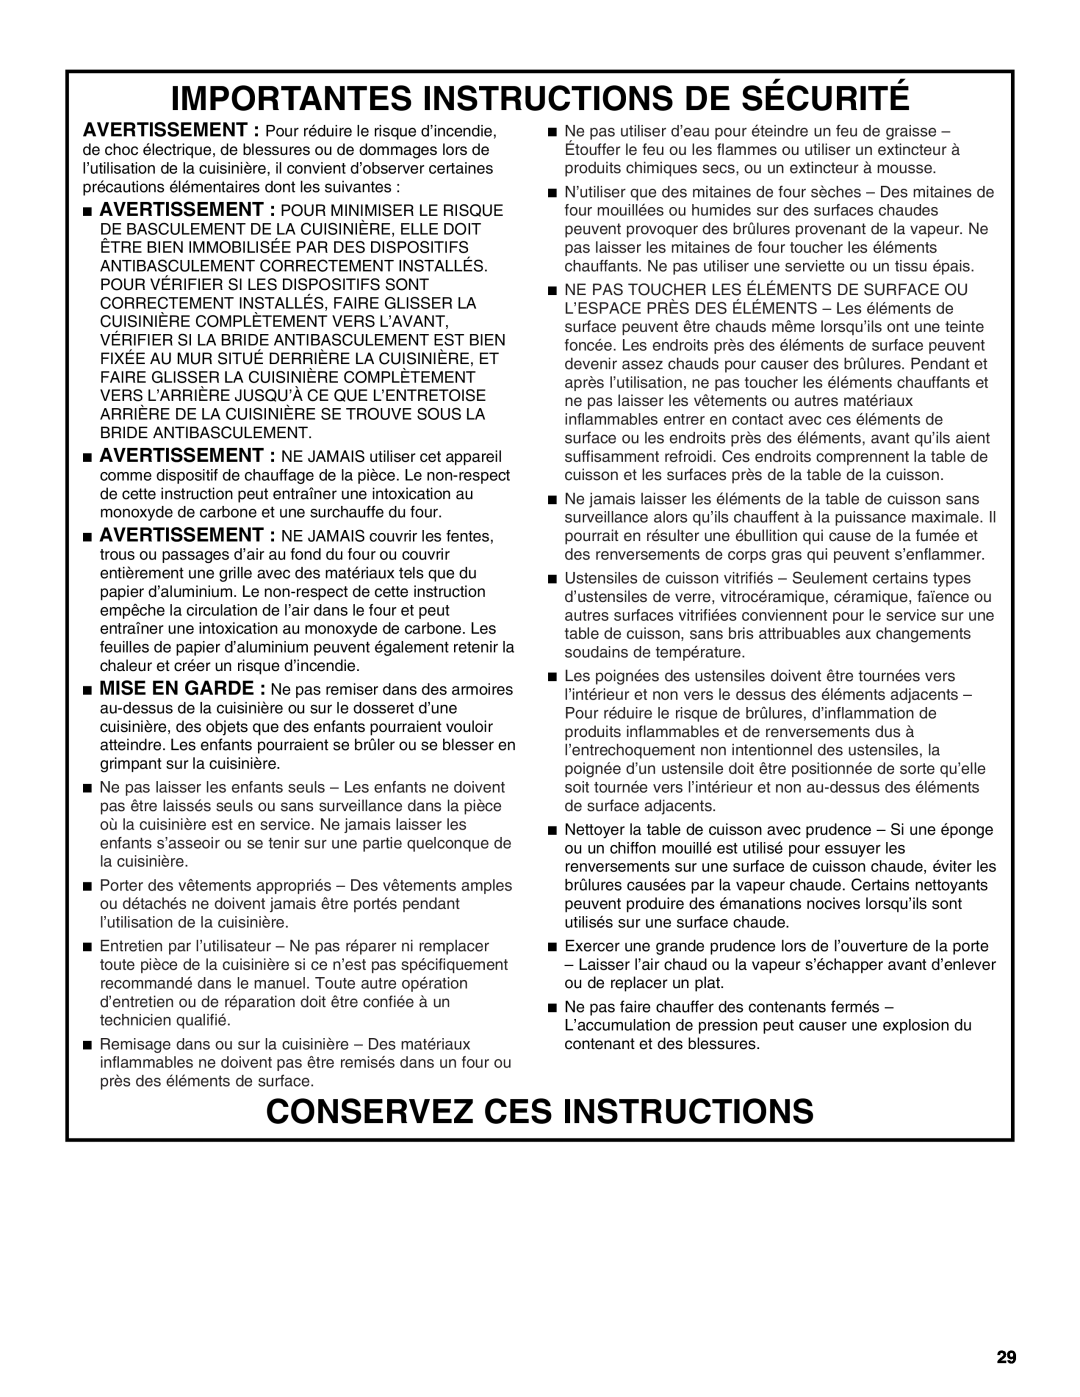 KitchenAid KDRP407 KDRP462 manual Importantes Instructions De Sécurité, Conservez Ces Instructions 